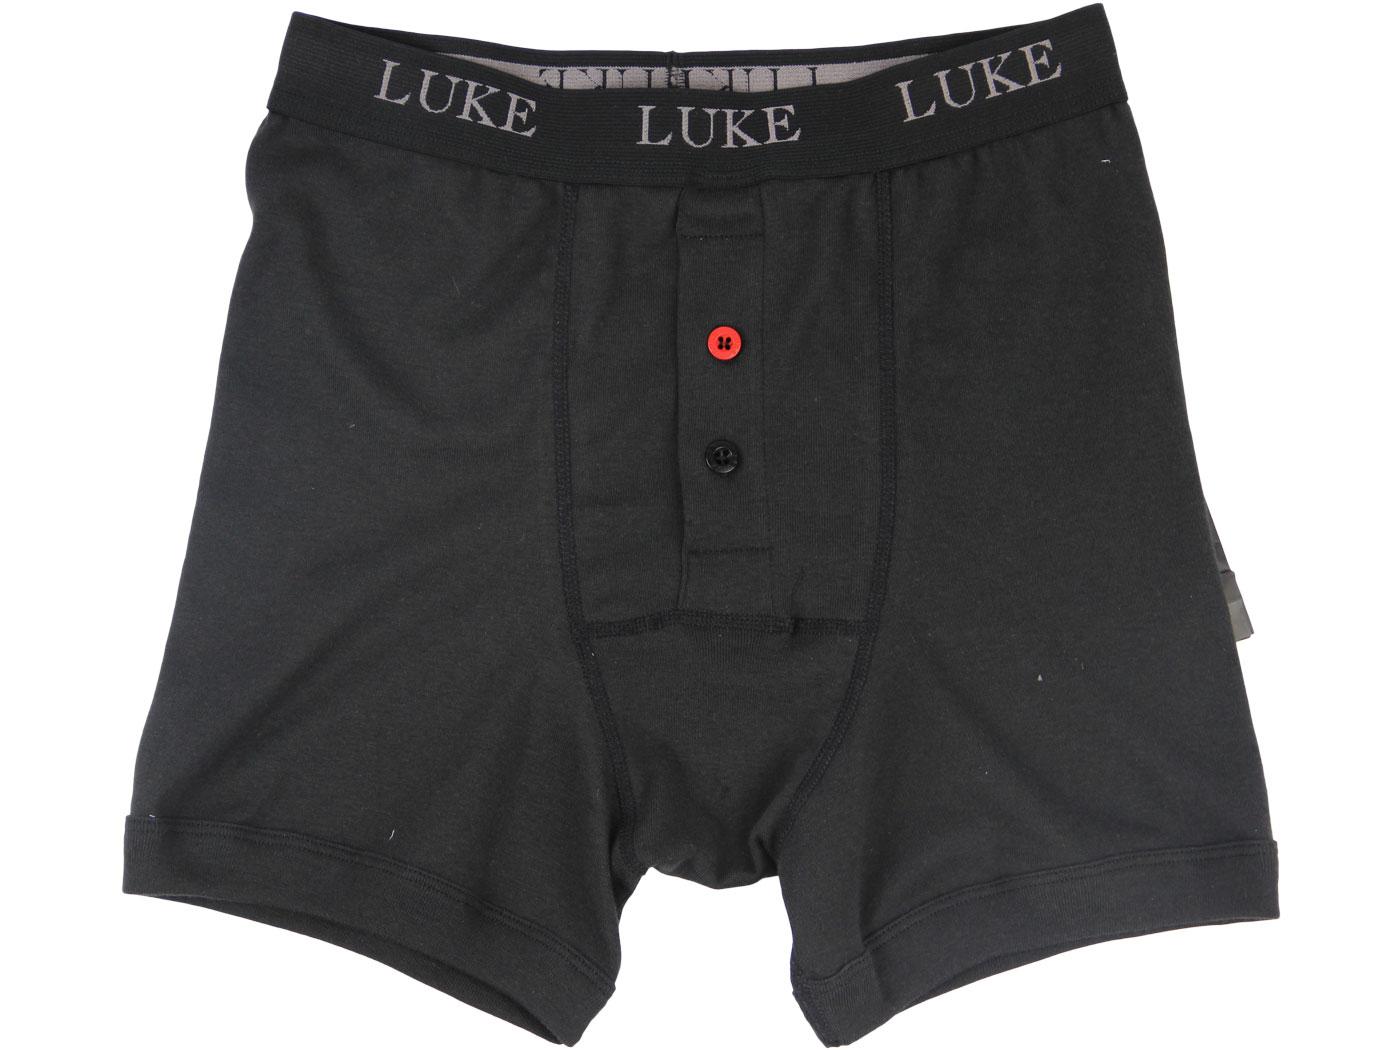 LUKE 1977 Bruno Mens Retro Boxer Shorts in Black